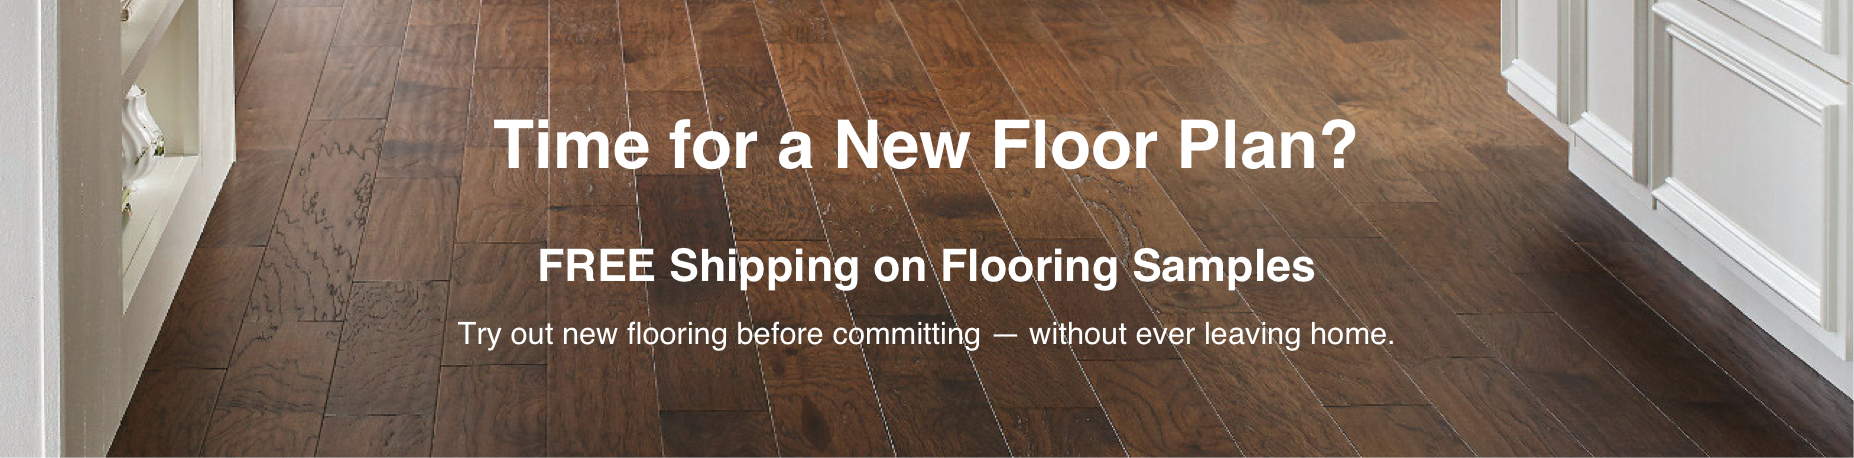 Flooring Samples, Free Hardwood Floor Samples